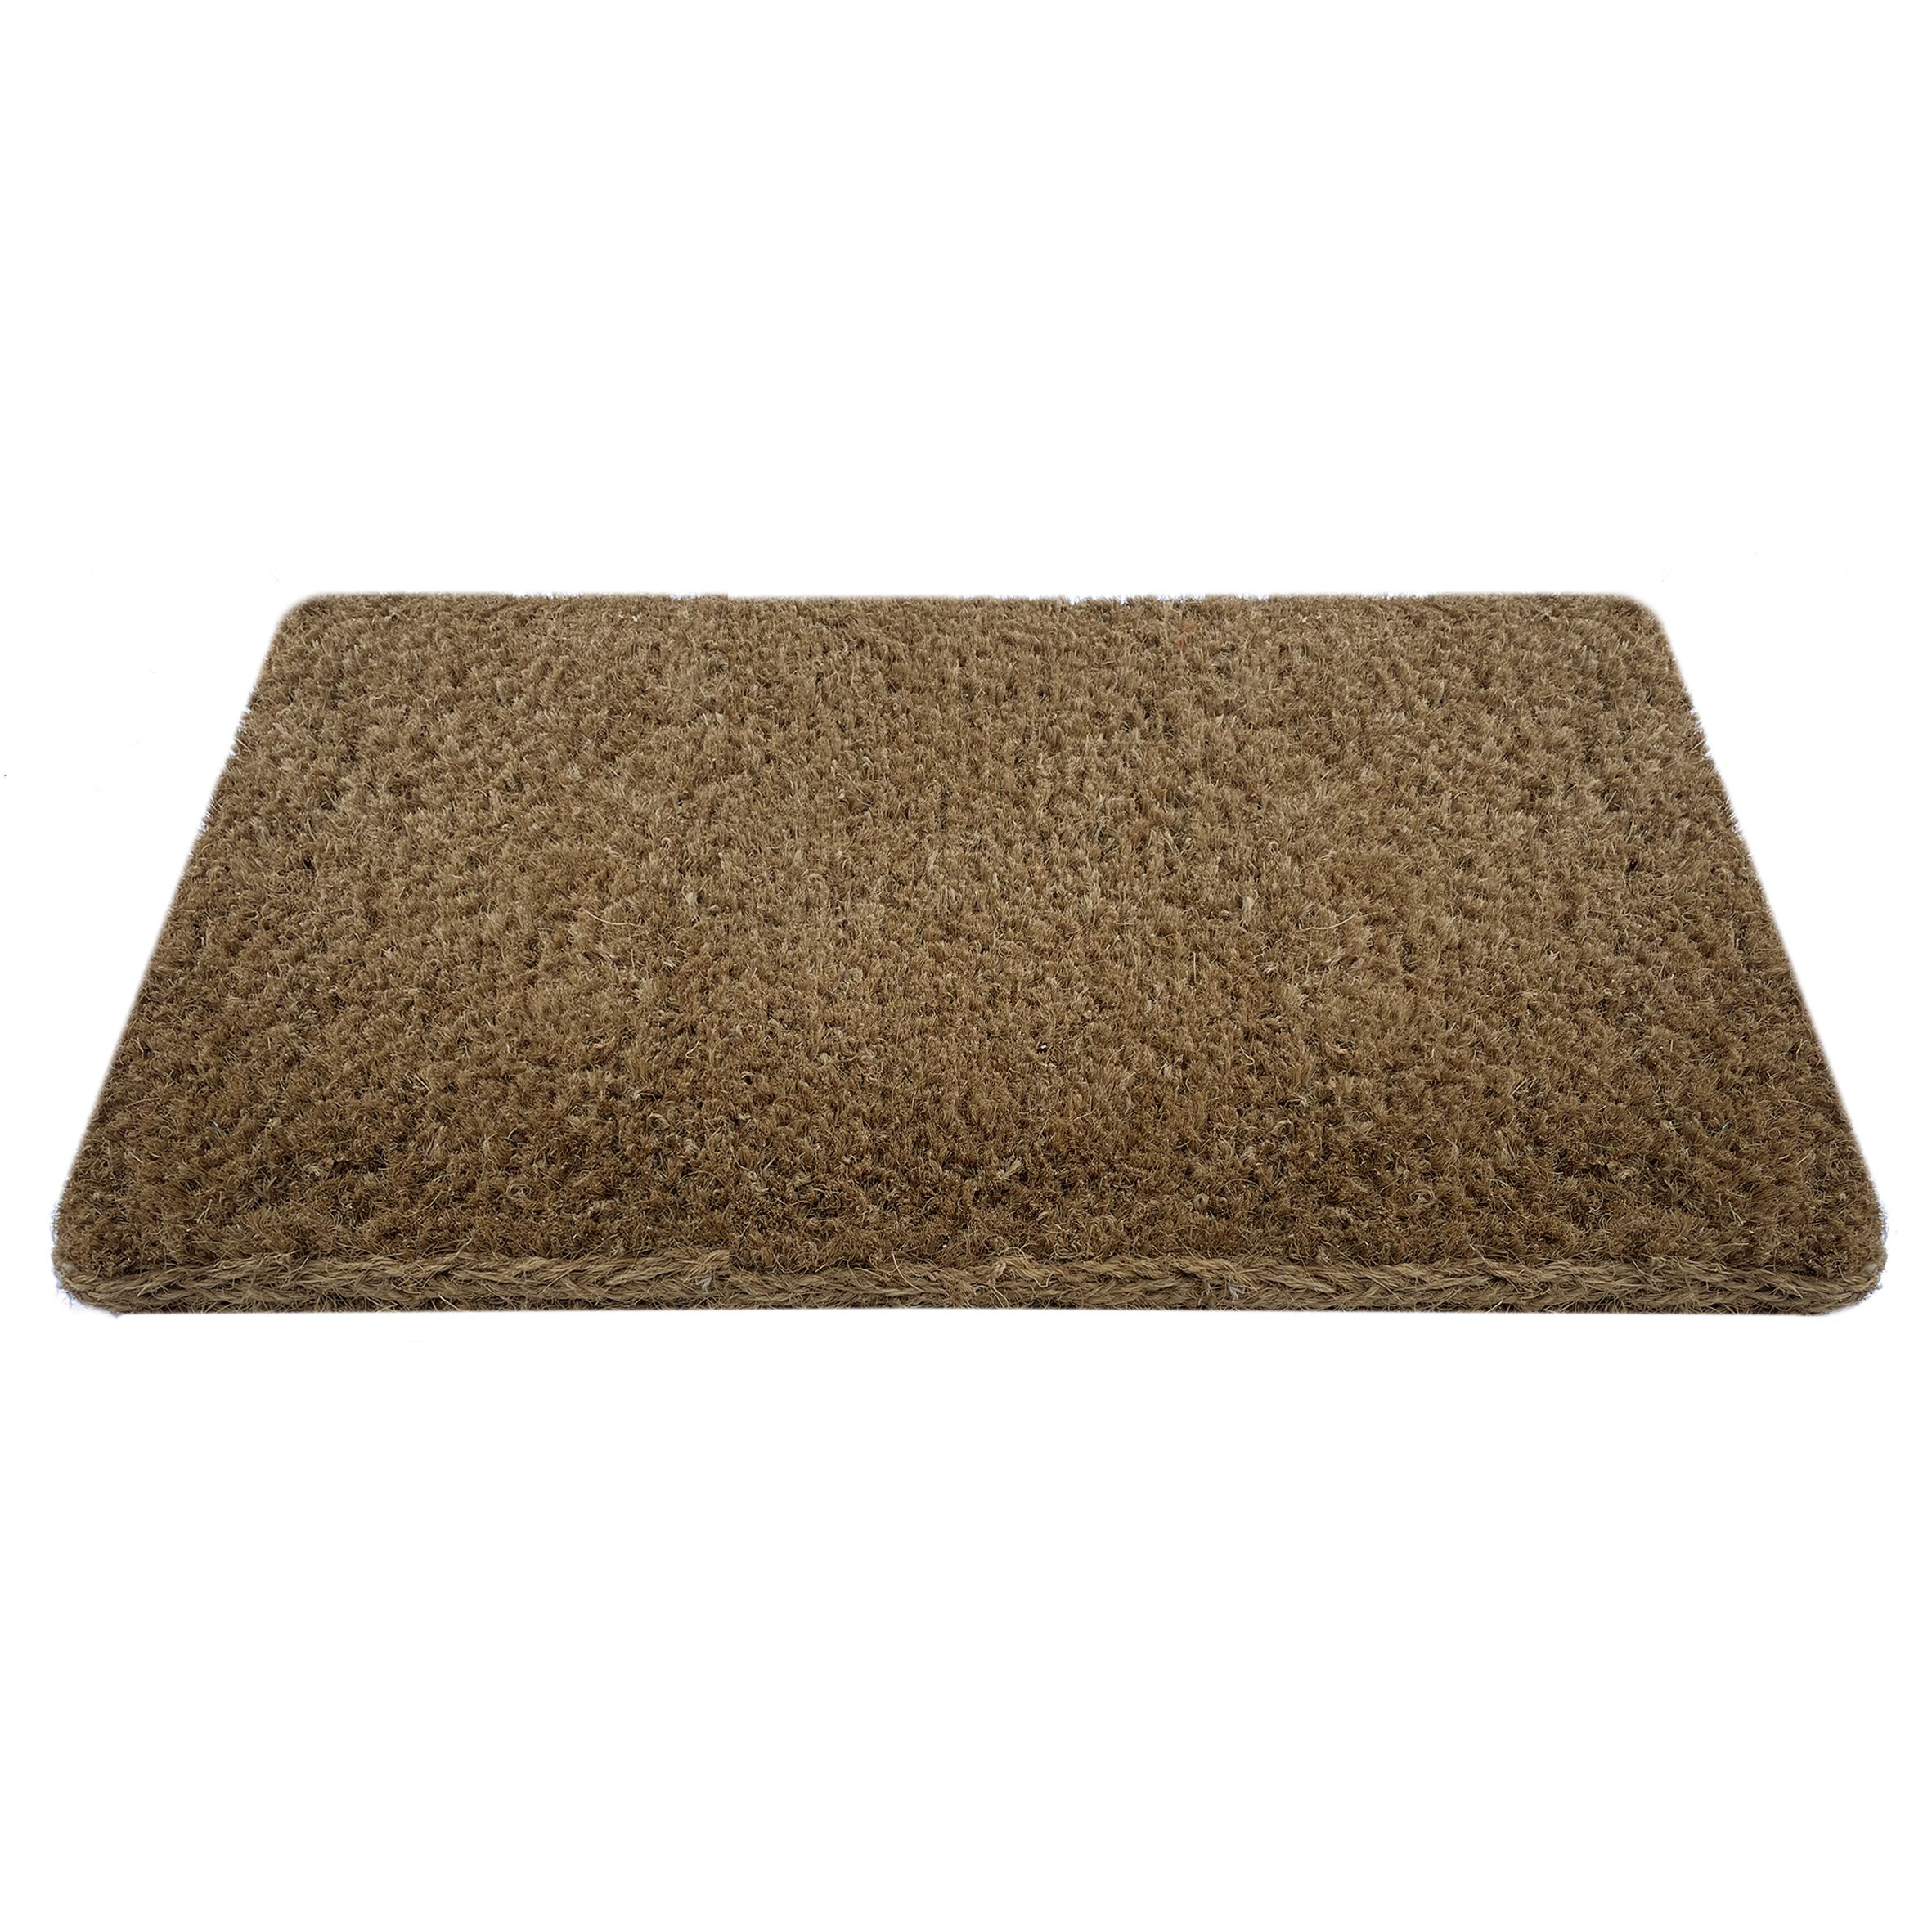 Kersey Brown Plain Heavy duty Door mat, 75cm x 45cm